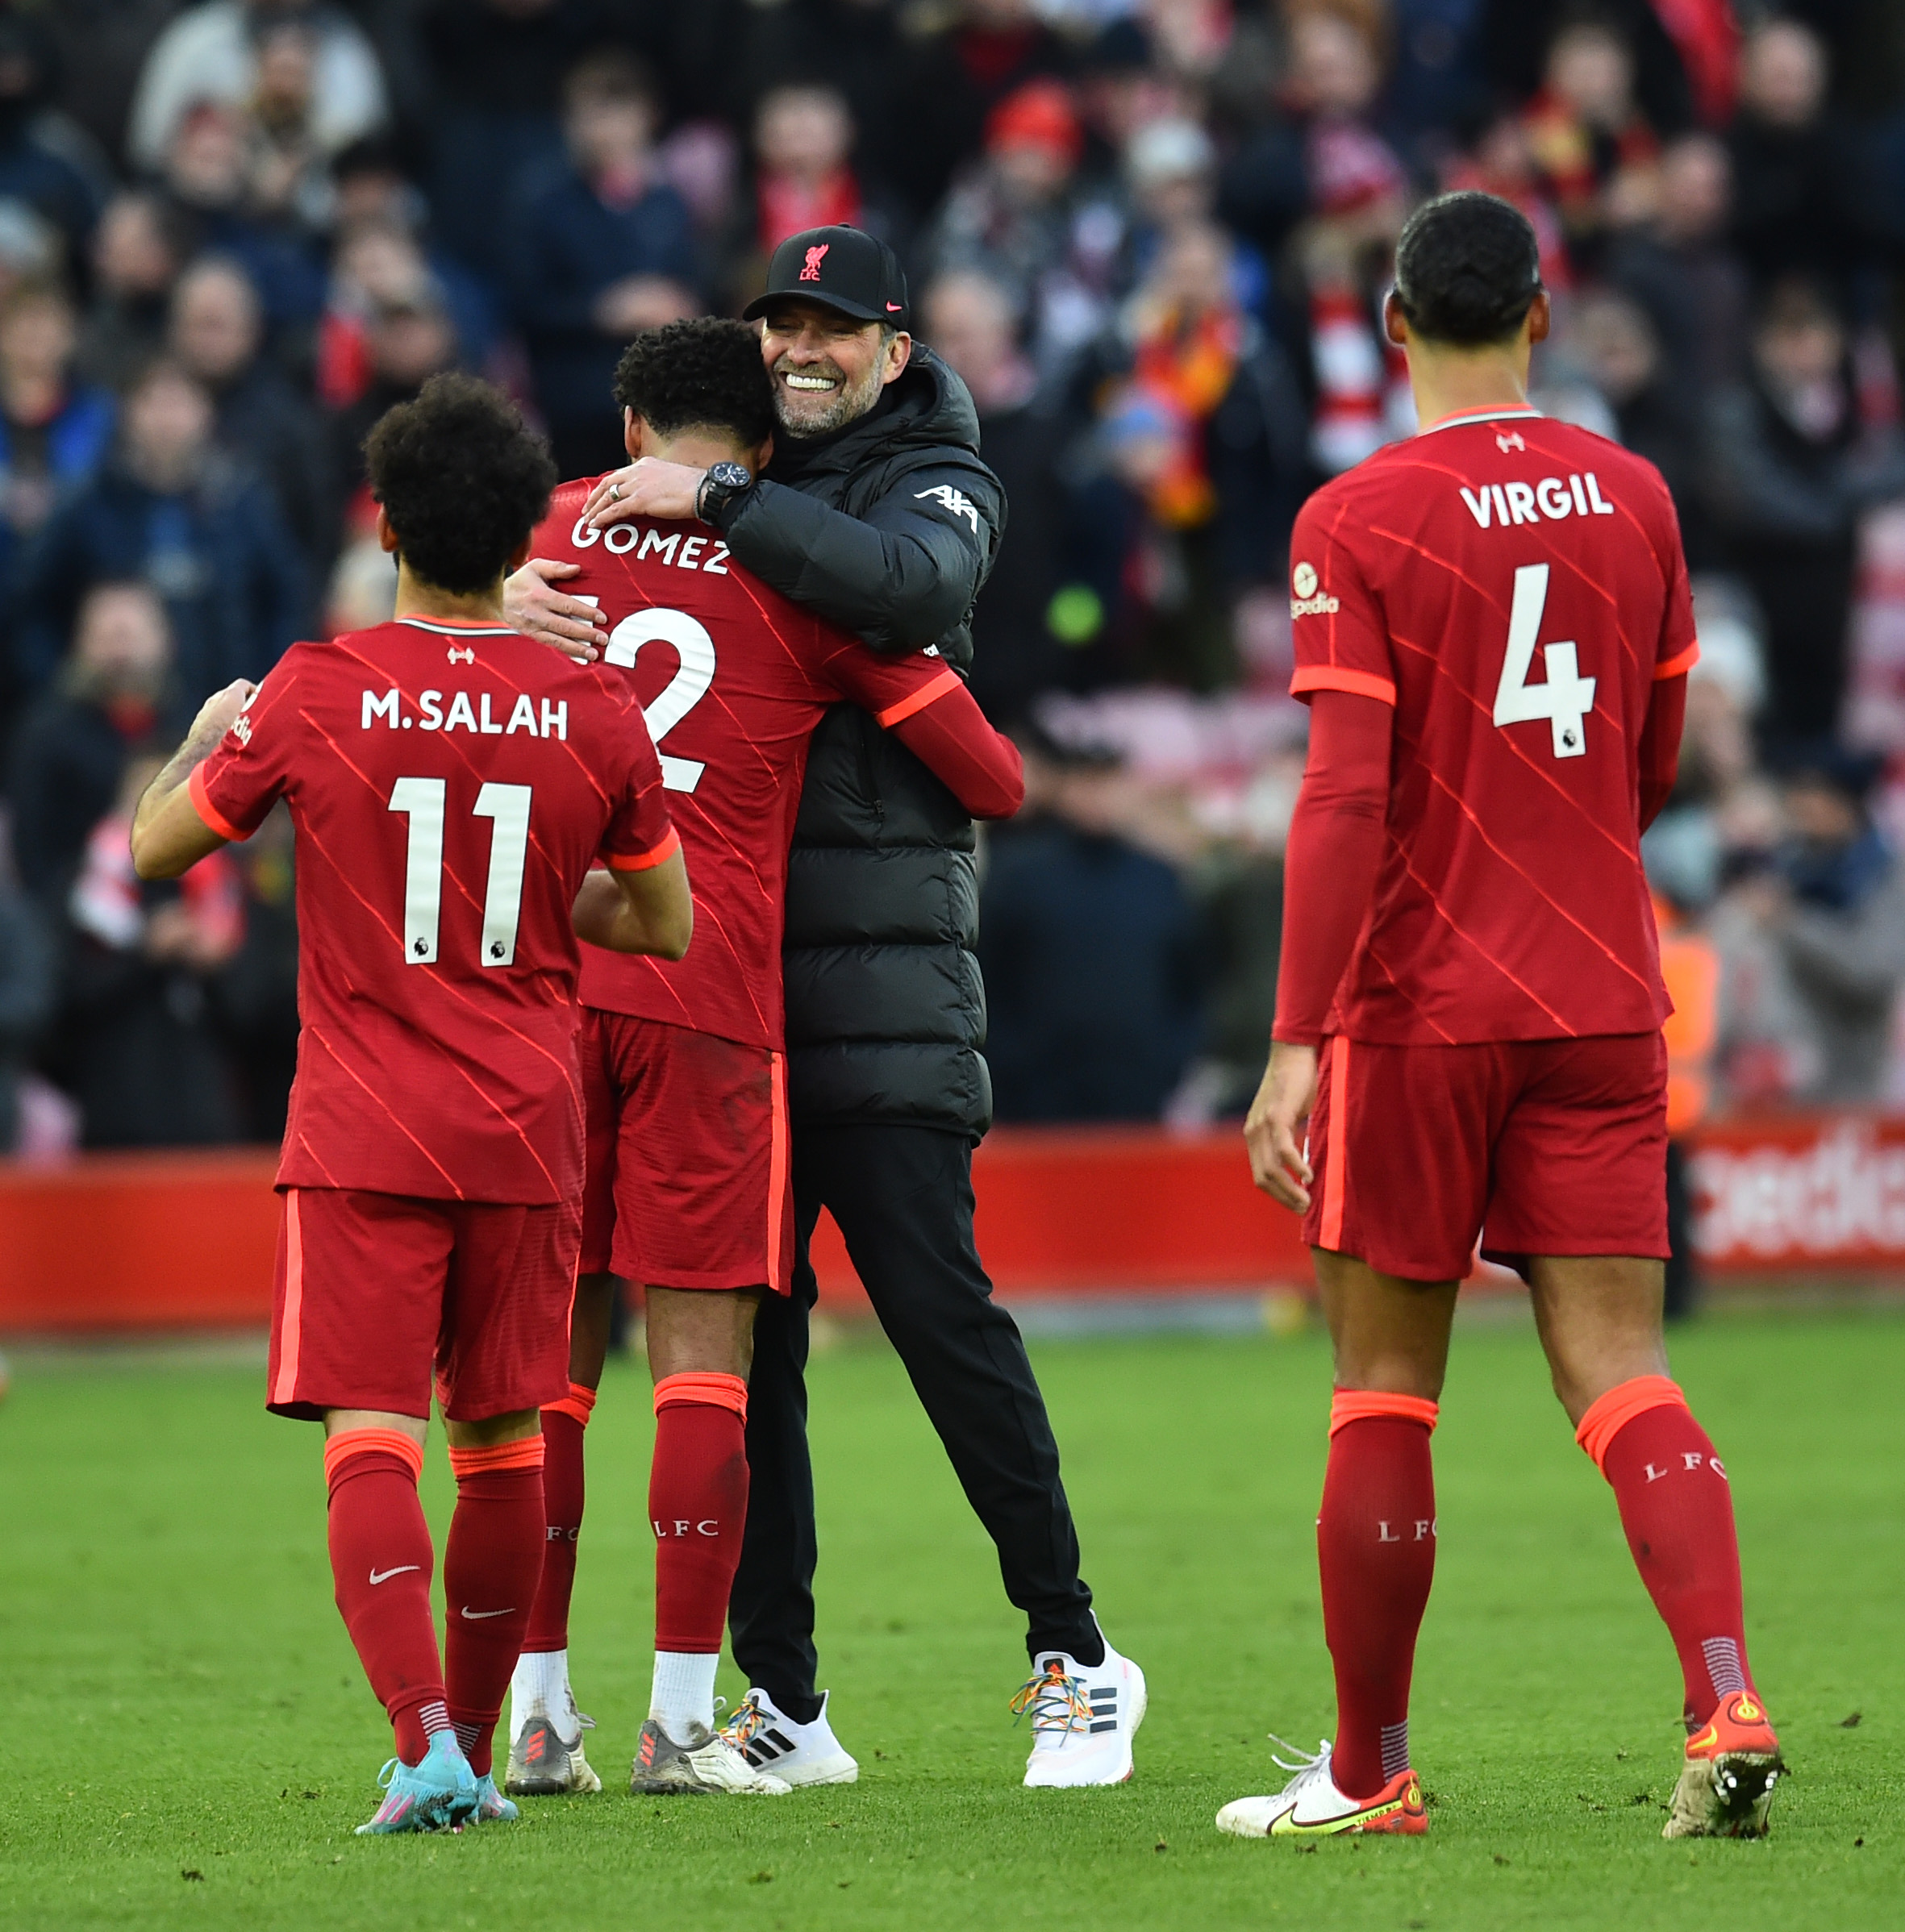 Van Dijk elogia Salah e projeta duelo do Liverpool com o Atlético